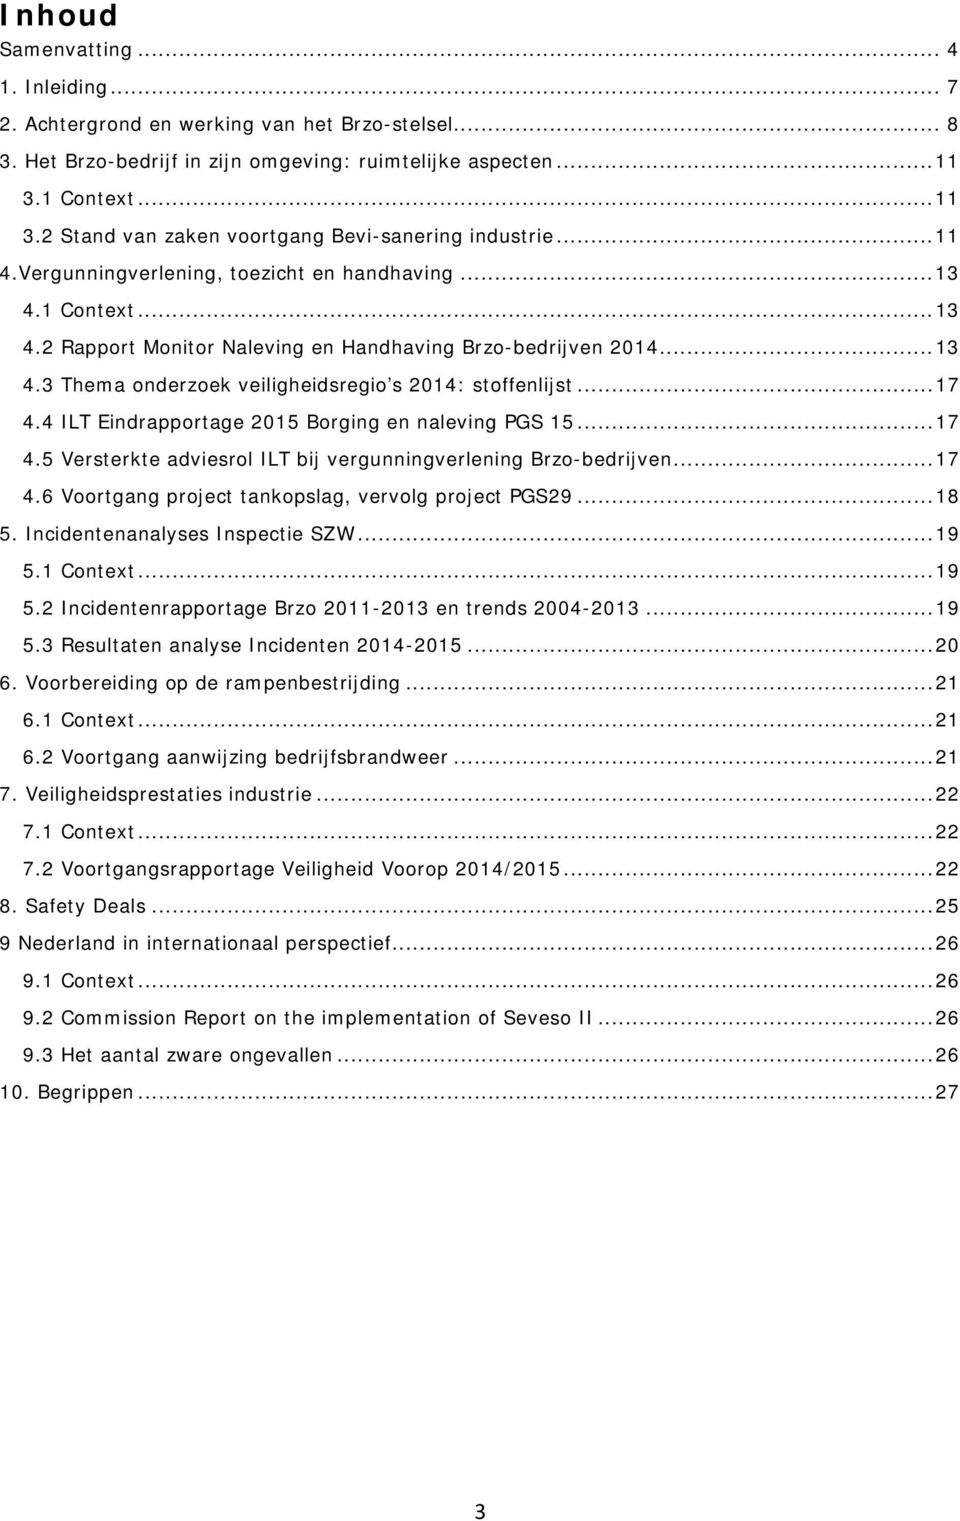 .. 13 4.3 Thema onderzoek veiligheidsregio s 2014: stoffenlijst... 17 4.4 ILT Eindrapportage 2015 Borging en naleving PGS 15... 17 4.5 Versterkte adviesrol ILT bij vergunningverlening Brzo-bedrijven.